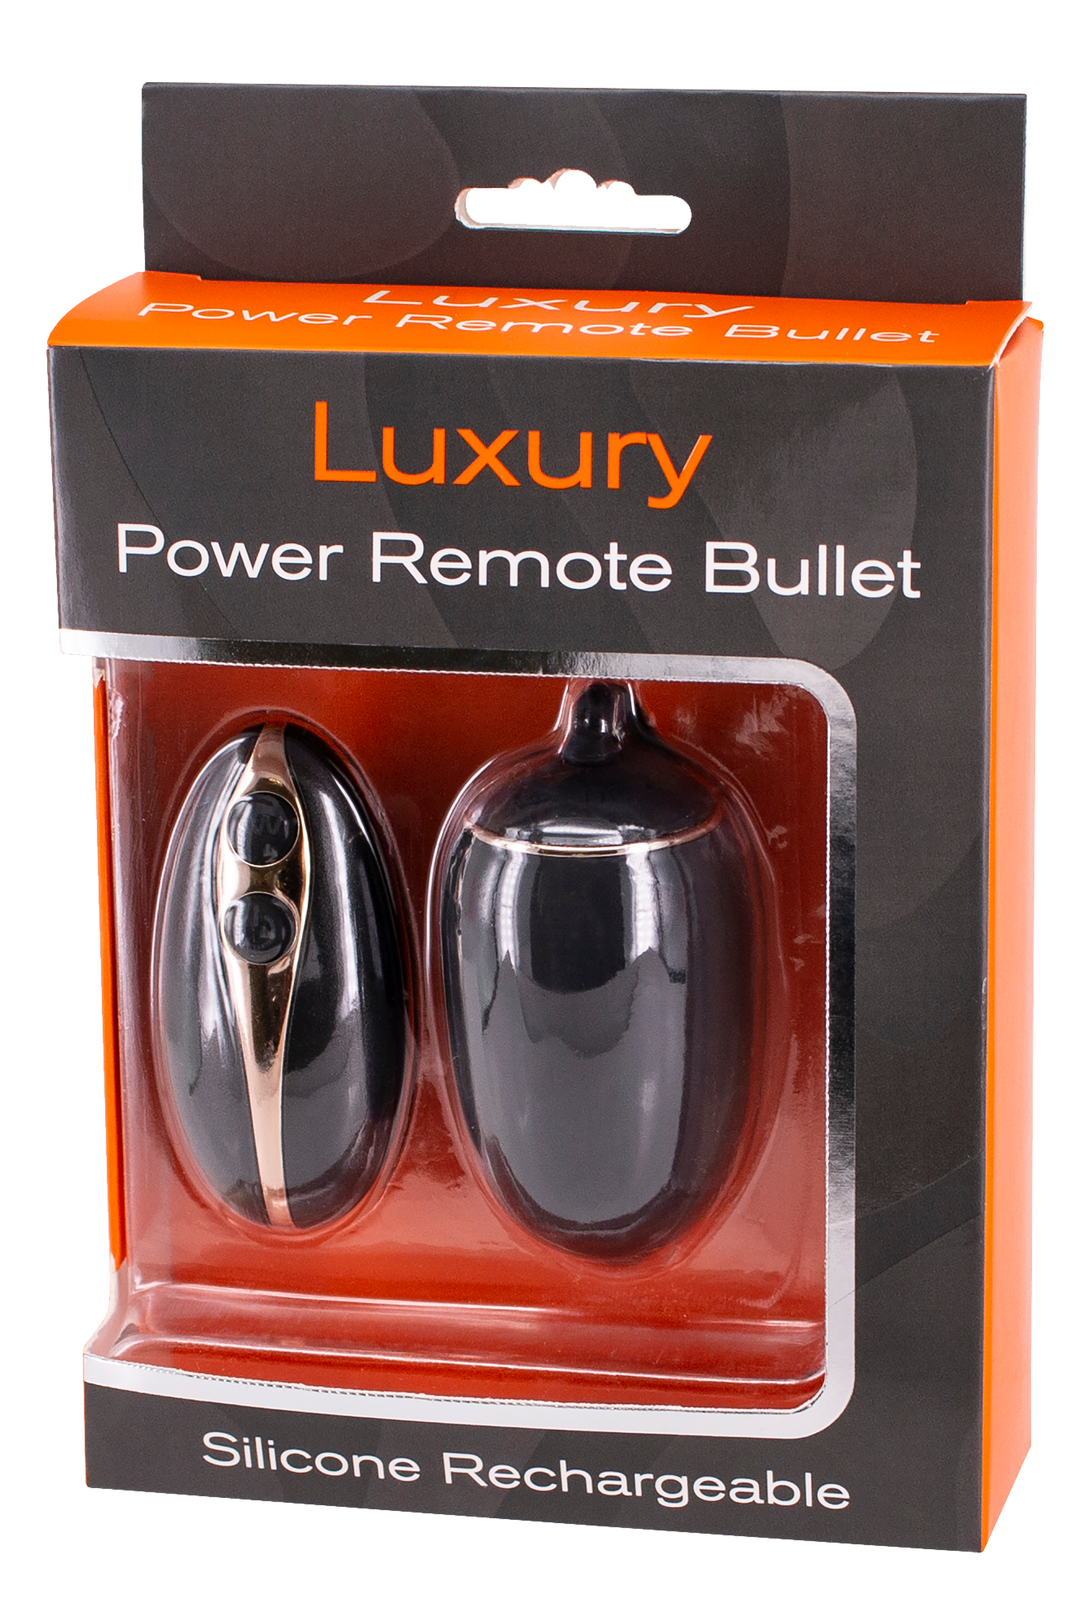 Ovulino Luxury Remote Control Sex Toys per la Coppia Realizzato in Silicone Medicale questo Bullet è Dotato di 7 Potenti Vibrazione e Ricarica USB